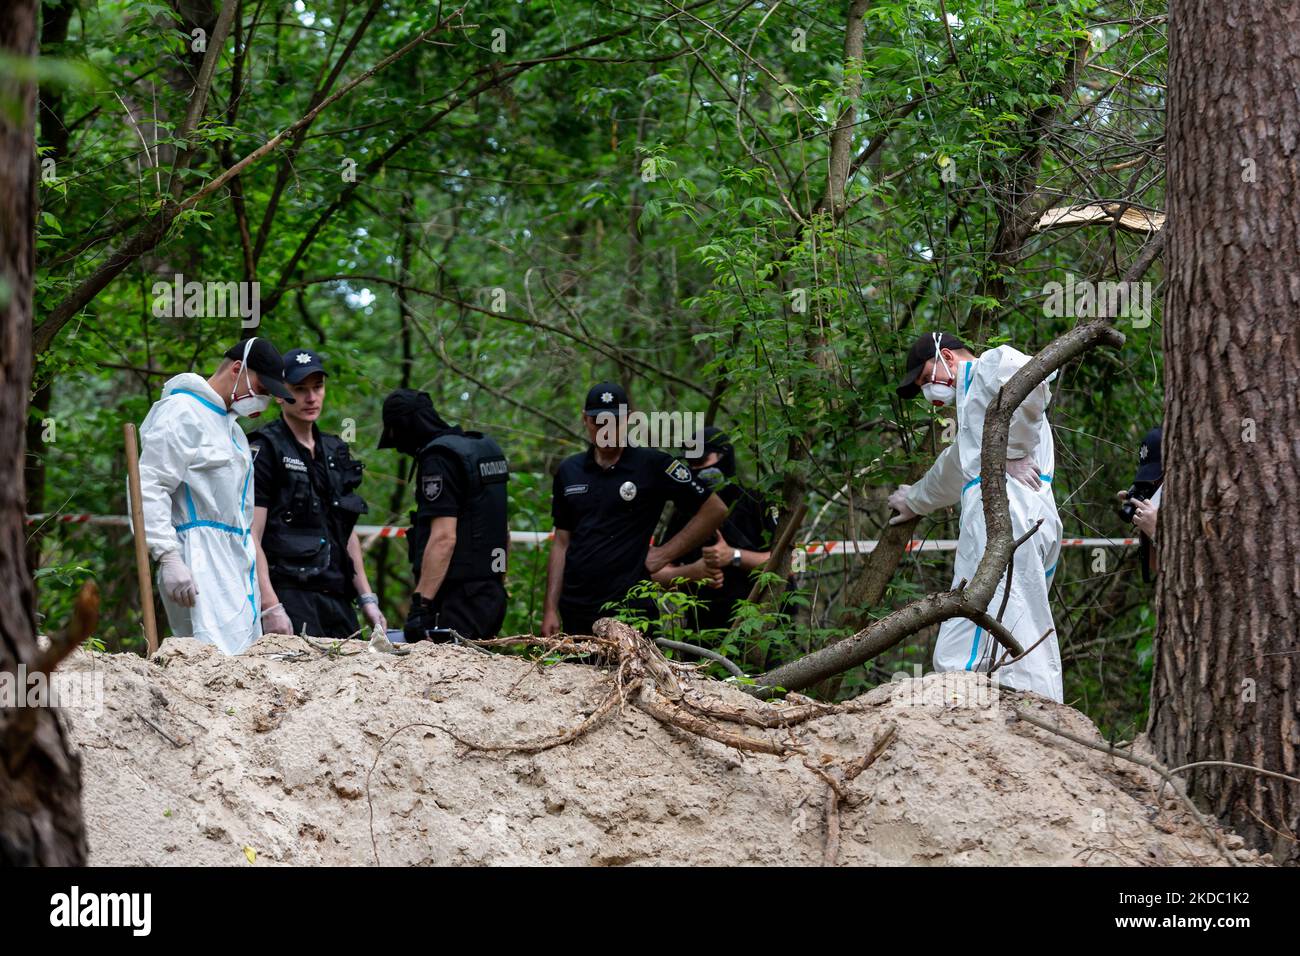 Am 13. Juni 2022 arbeiten ein Aushubteam und eine Polizei in einem Wald in der Nähe von Bucha, Ukraine, um Leichen ukrainischer Zivilisten auszugraben, die von der russischen Armee ermordet wurden. Die Leichen wurden von einer Patrouille der Territorialen Verteidigungskräfte entdeckt und befanden sich in der Nähe von Tranchen, die von der russischen Armee bei der Besetzung des Territoriums errichtet wurden. Aus einem Massengrab wurden sieben Leichen ausgegraben. Einige der Körper haben Anzeichen dafür, dass sie gefesselt und beschossen wurden. Eine Untersuchung wird folgen. (Foto von Dominika Zarzycka/NurPhoto) Stockfoto